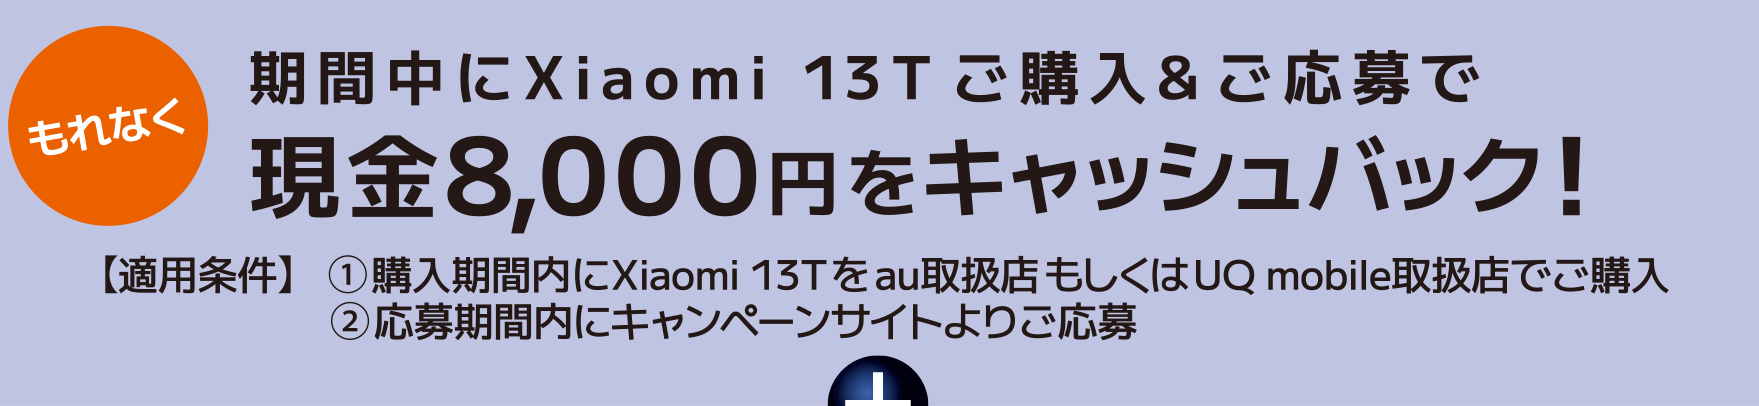 もれなく 期間中にXiaomi 13T ご購入&ご応募で現金8,000円をキャッシュバック！